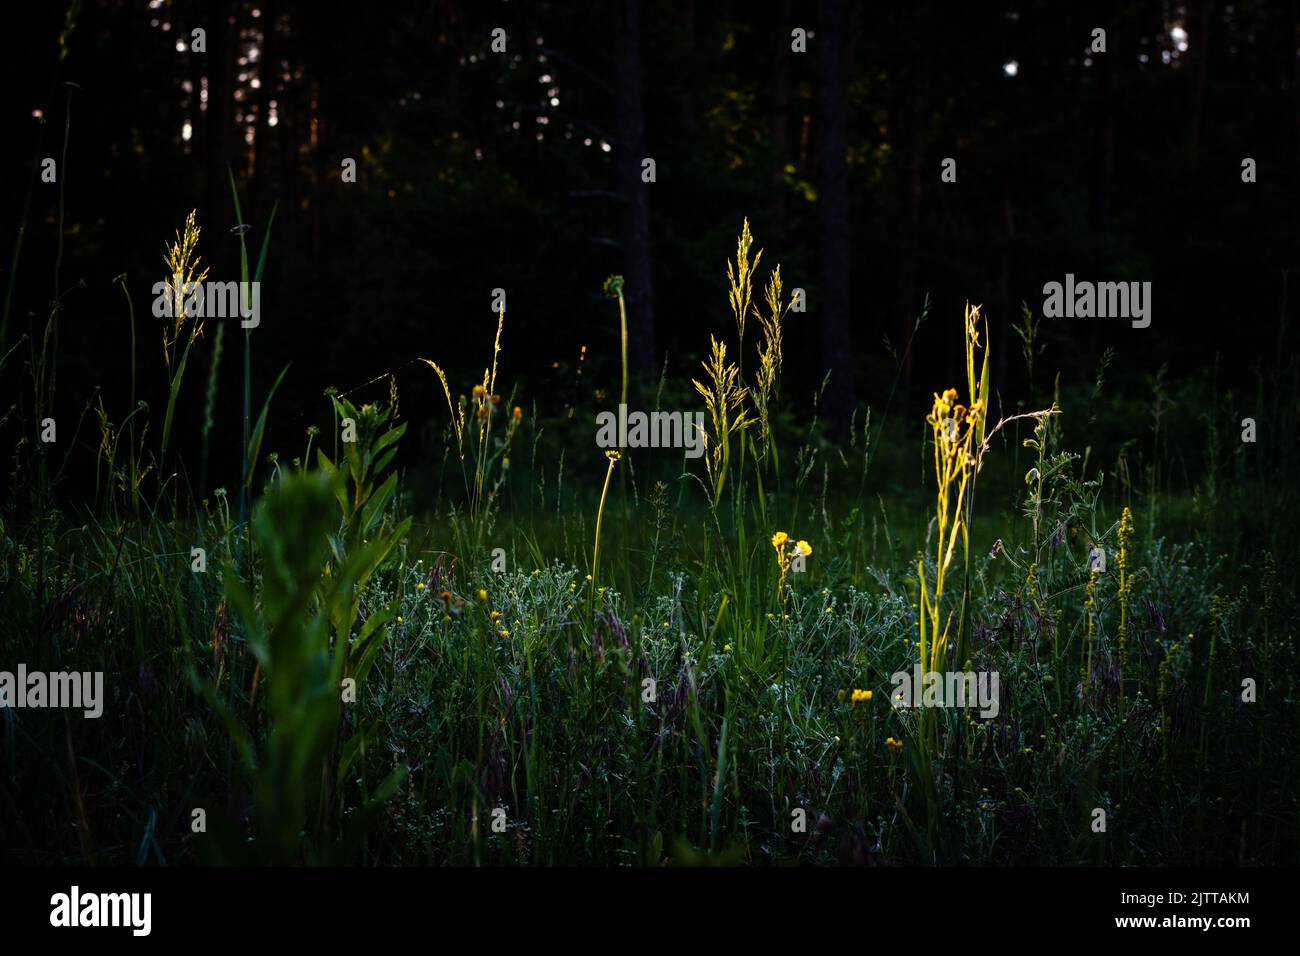 Eine Nahaufnahme einer dünnen gelben Pflanze, die inmitten eines grünen, üppigen Feldes unter der Abendsonne wächst Stockfoto